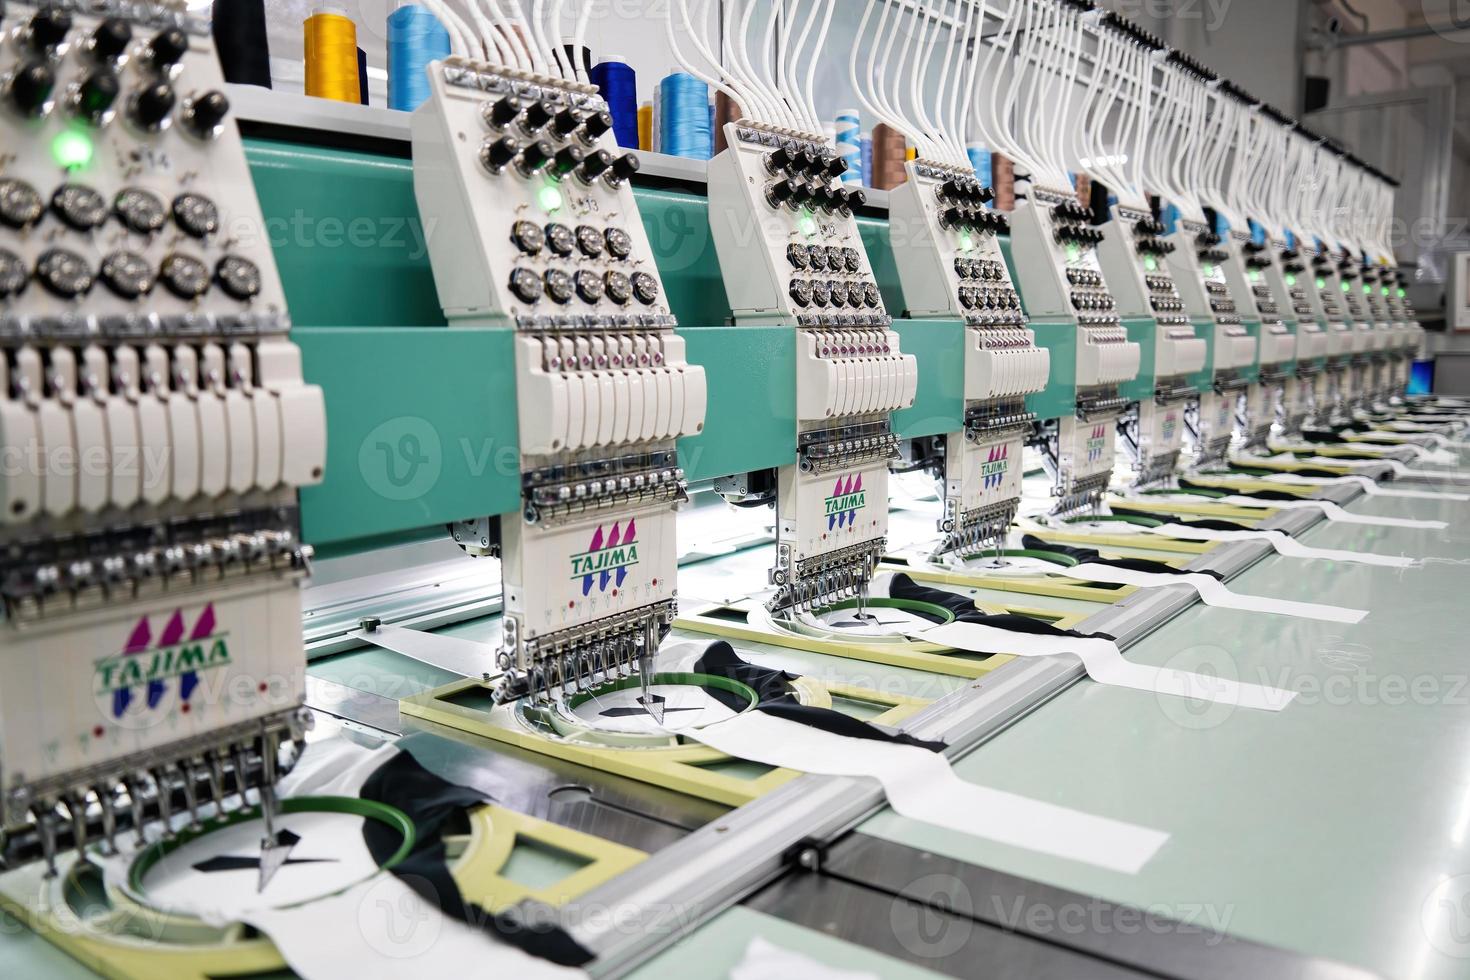 máquina de coser moderna y automática de alta tecnología para el proceso de fabricación de prendas de vestir o textiles en la industria. industria textil digital. bordado computarizado. foto